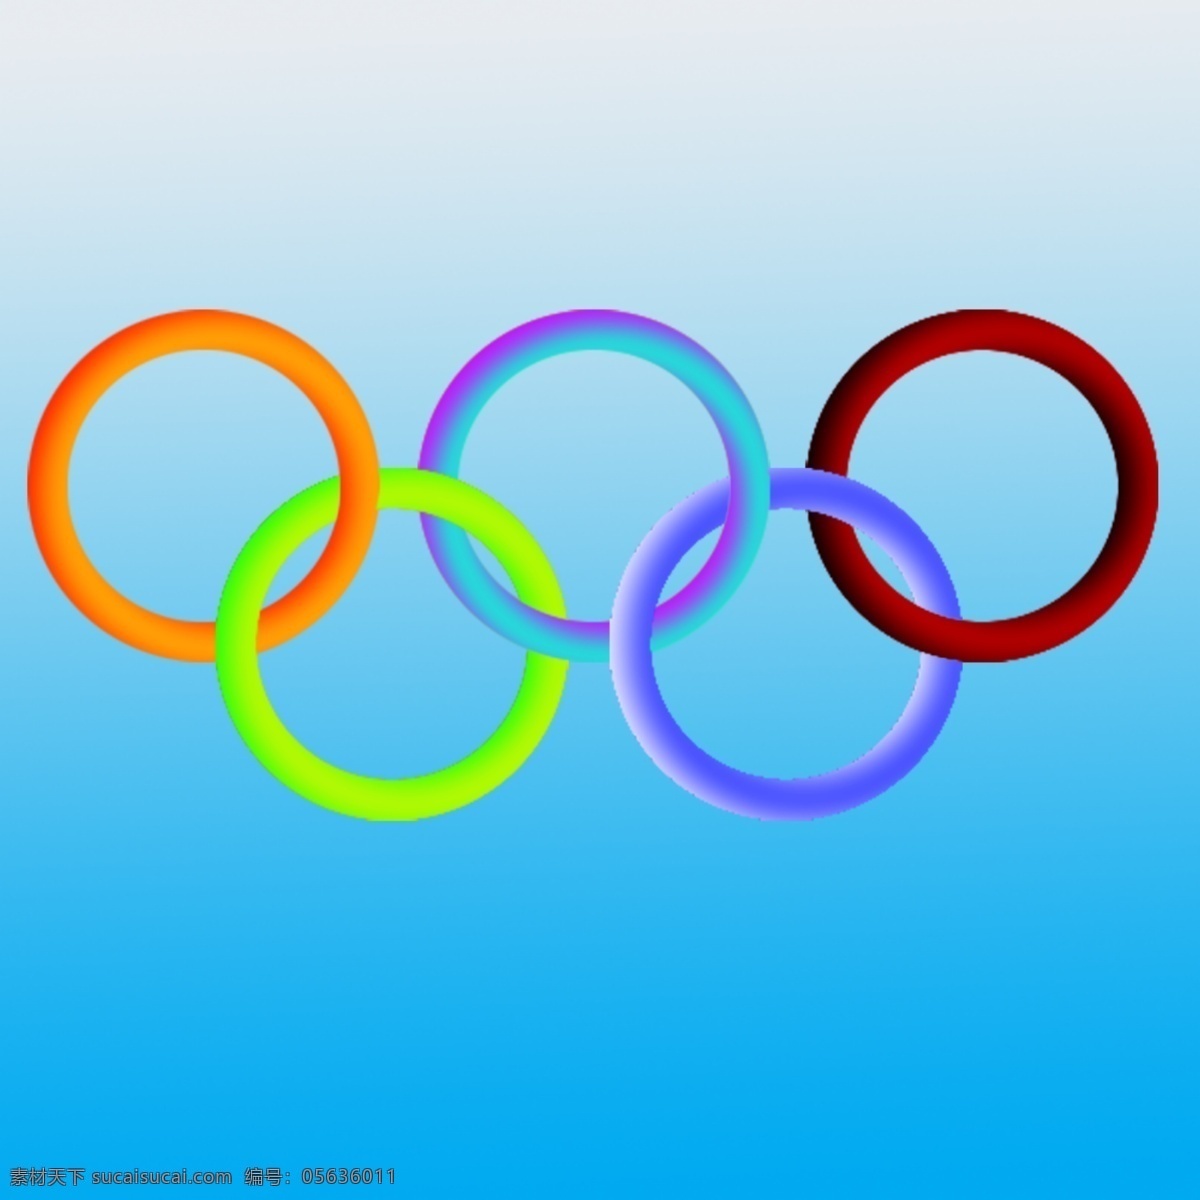 奥运五环 奥运 五环 体育 比赛 和平 青色 天蓝色